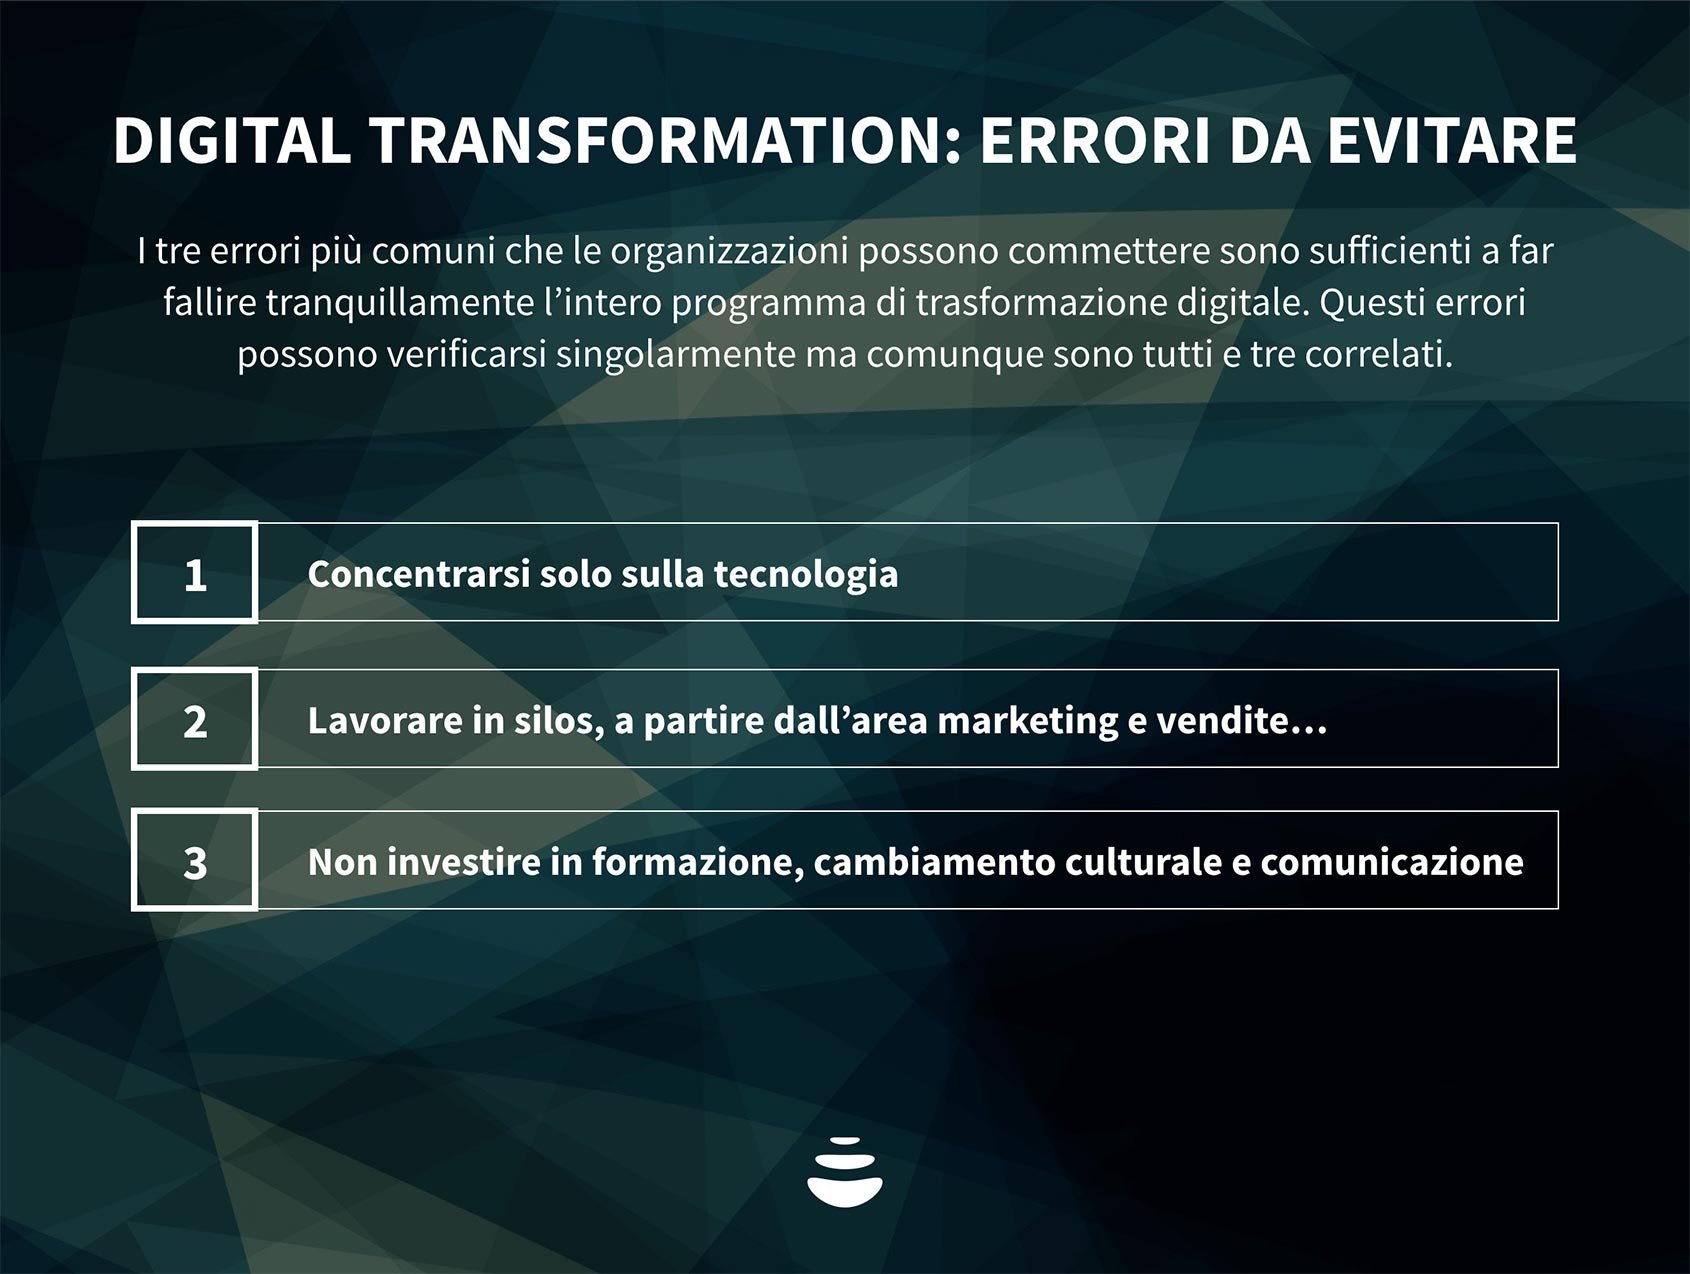 Gli errori da evitare nell’implementazione della digital transformation